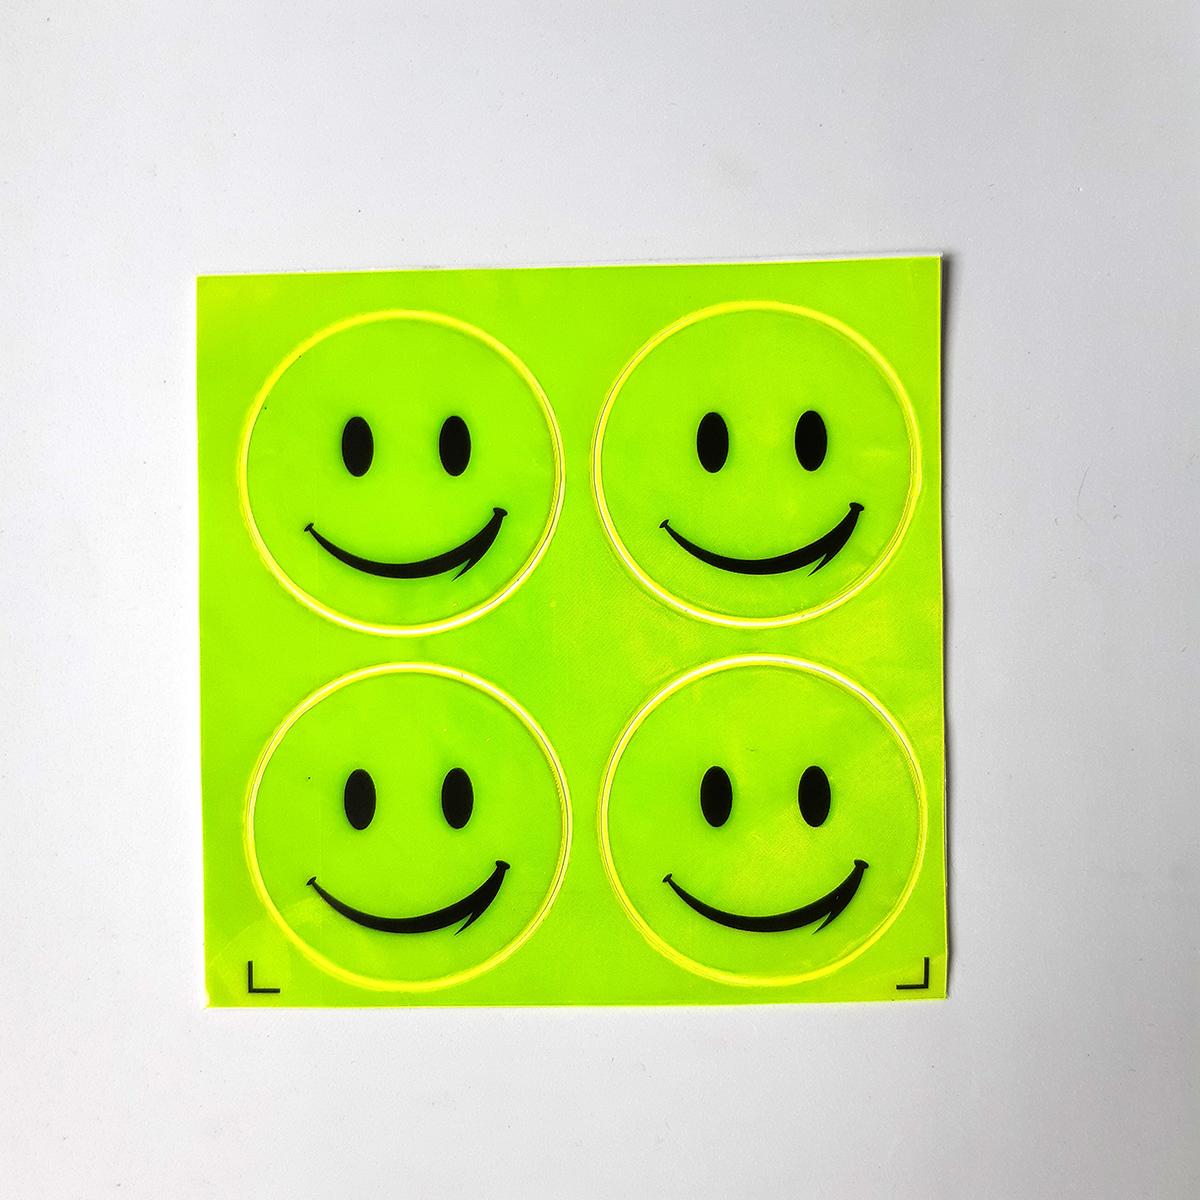 Tấm Sticker dán phản xạ 4 hình mặt mũi cười cợt đen